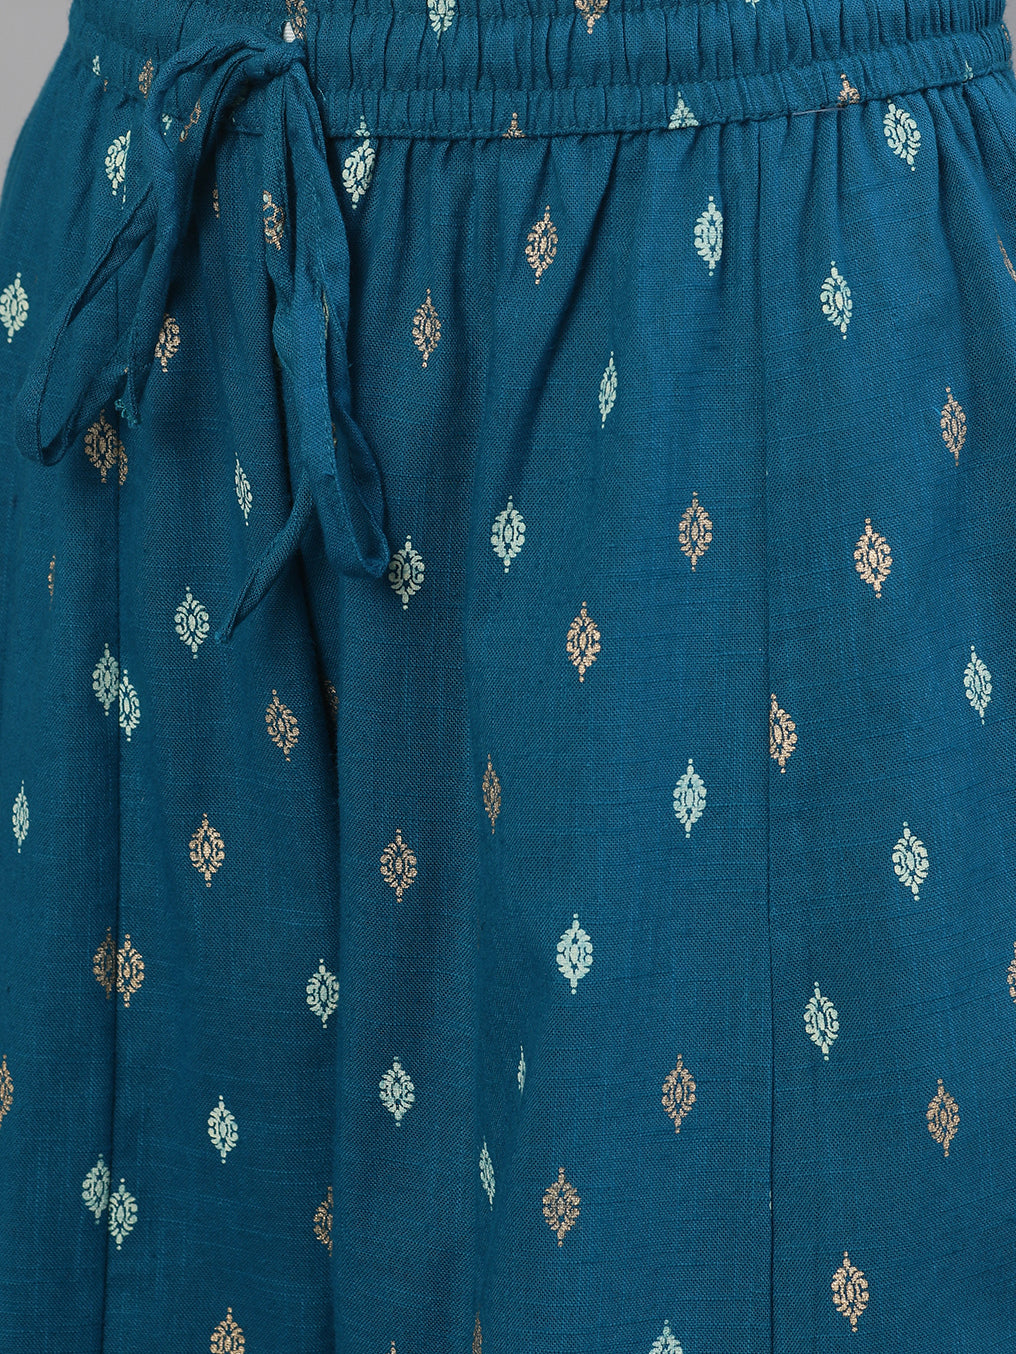 Ishin Women's Cotton Teal Yoke Design A-Line Kurta Sharara Set